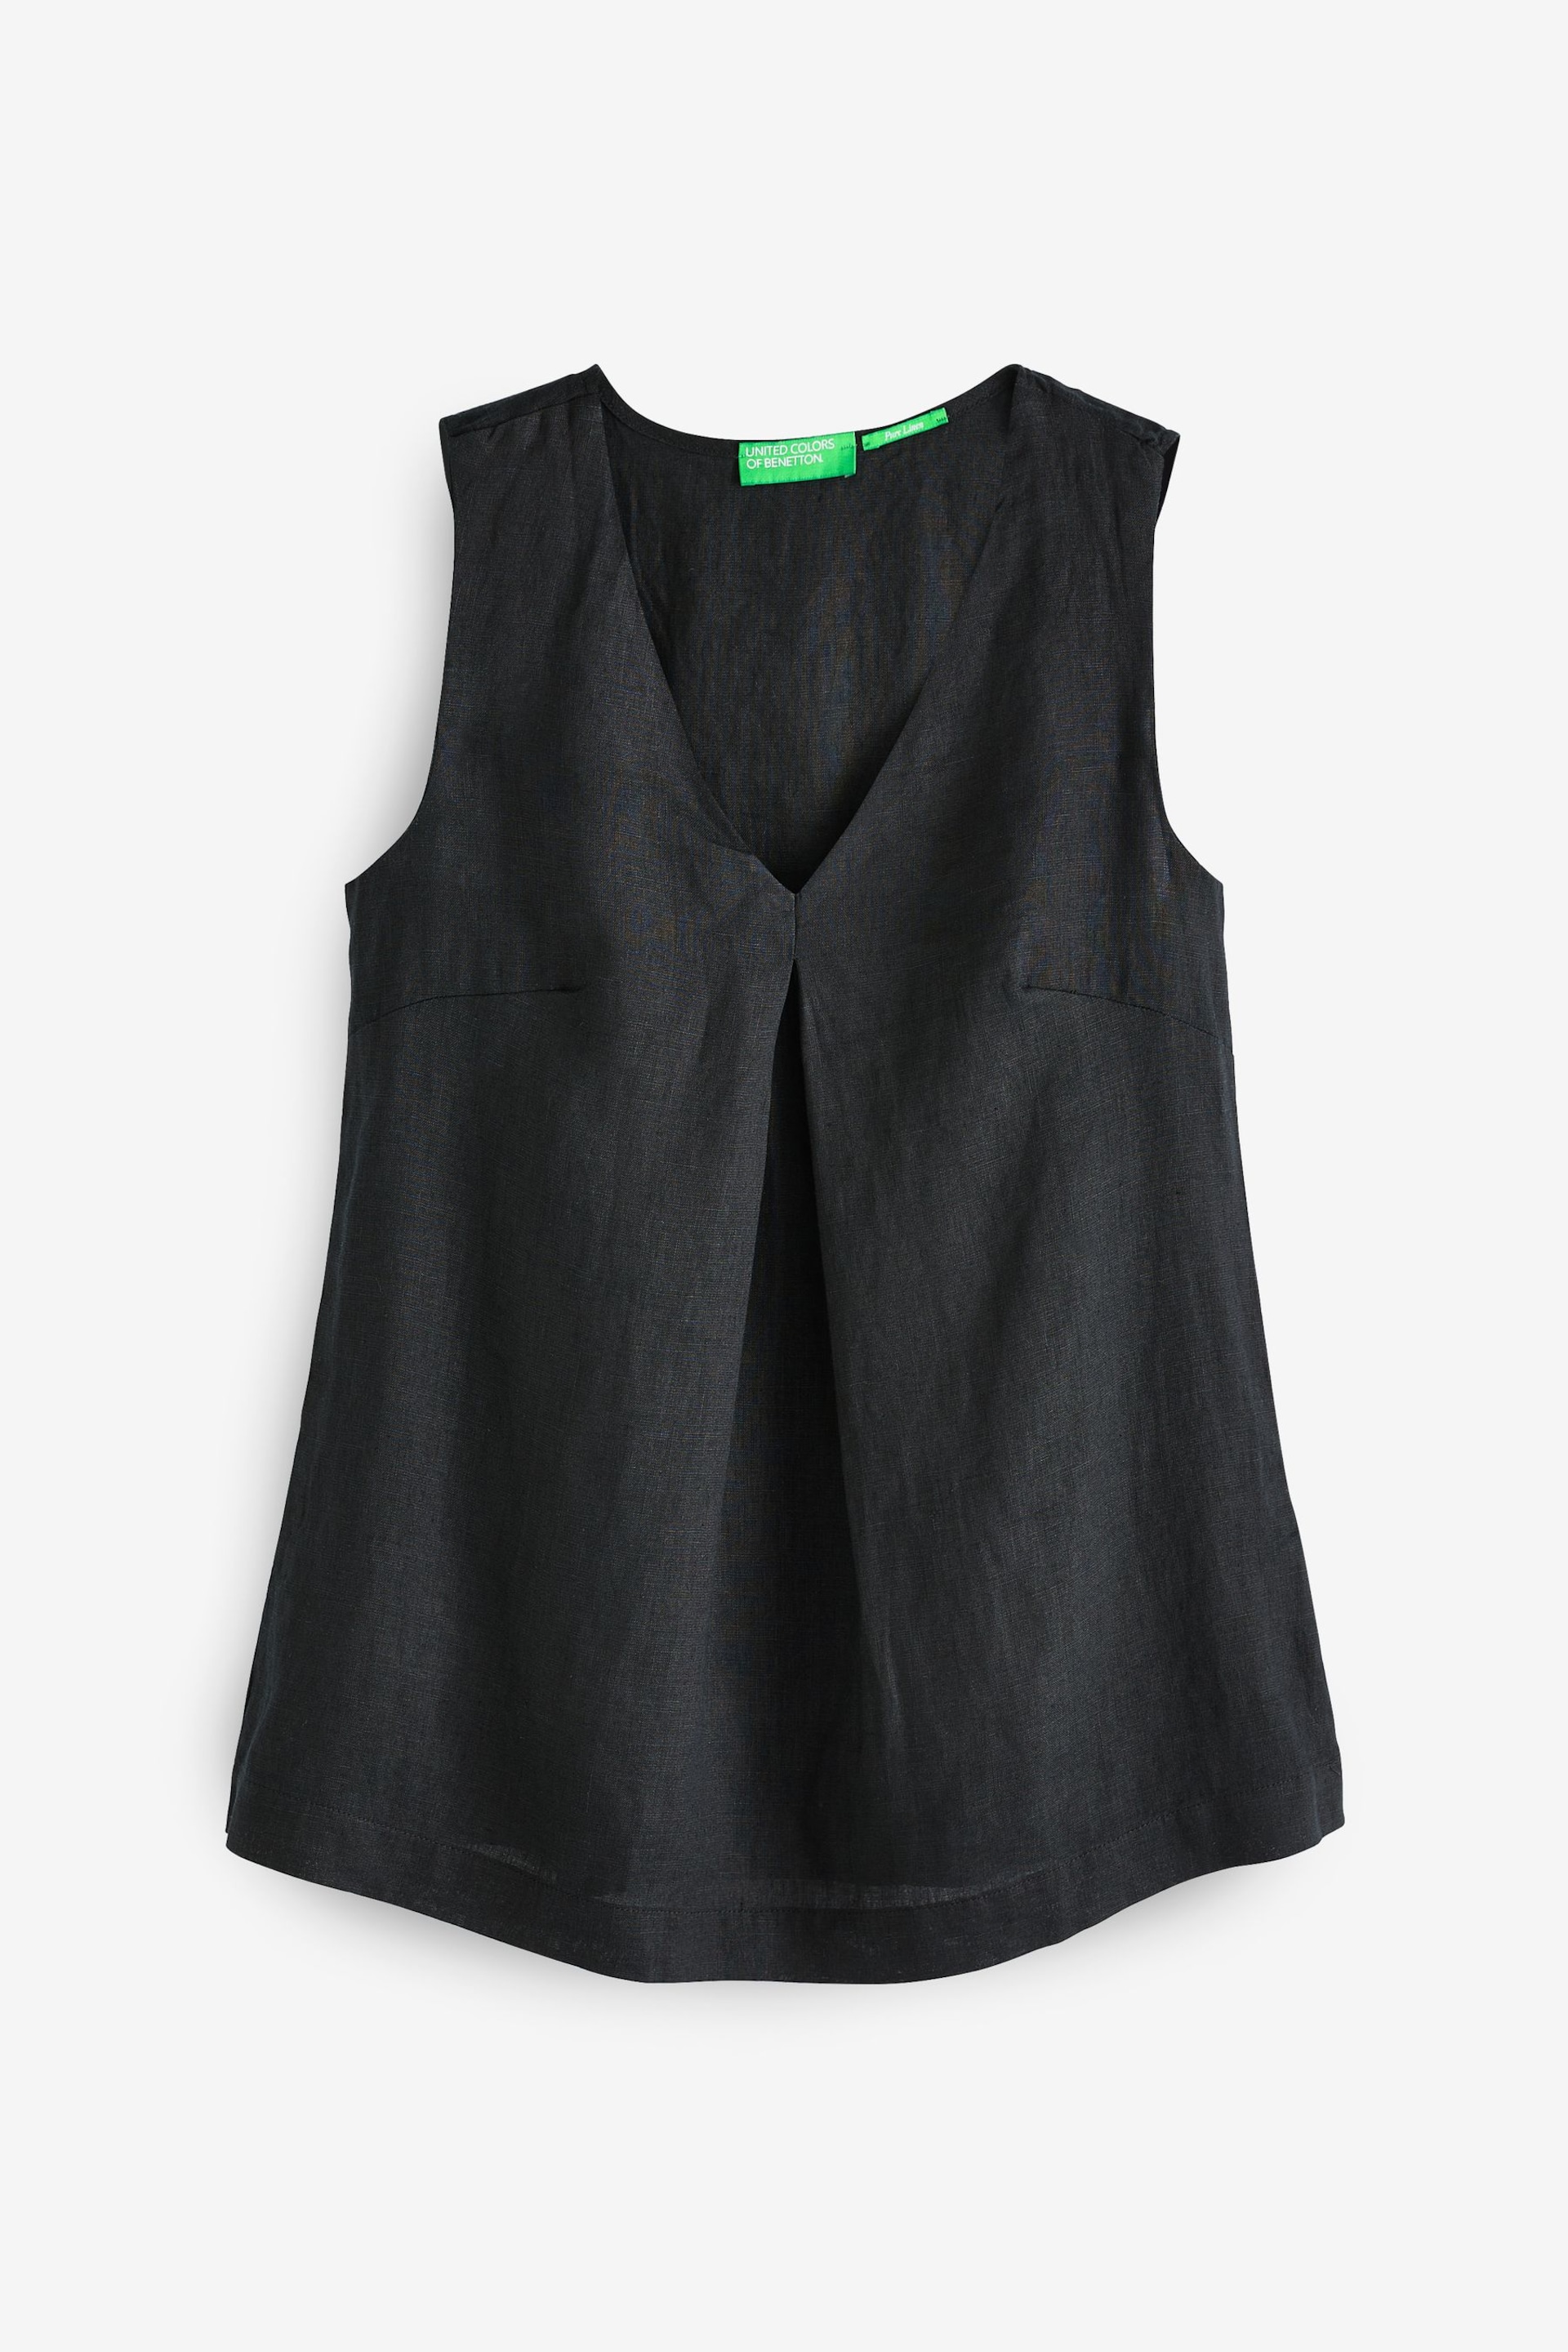 Benetton Linen Black Blouse - Image 1 of 1